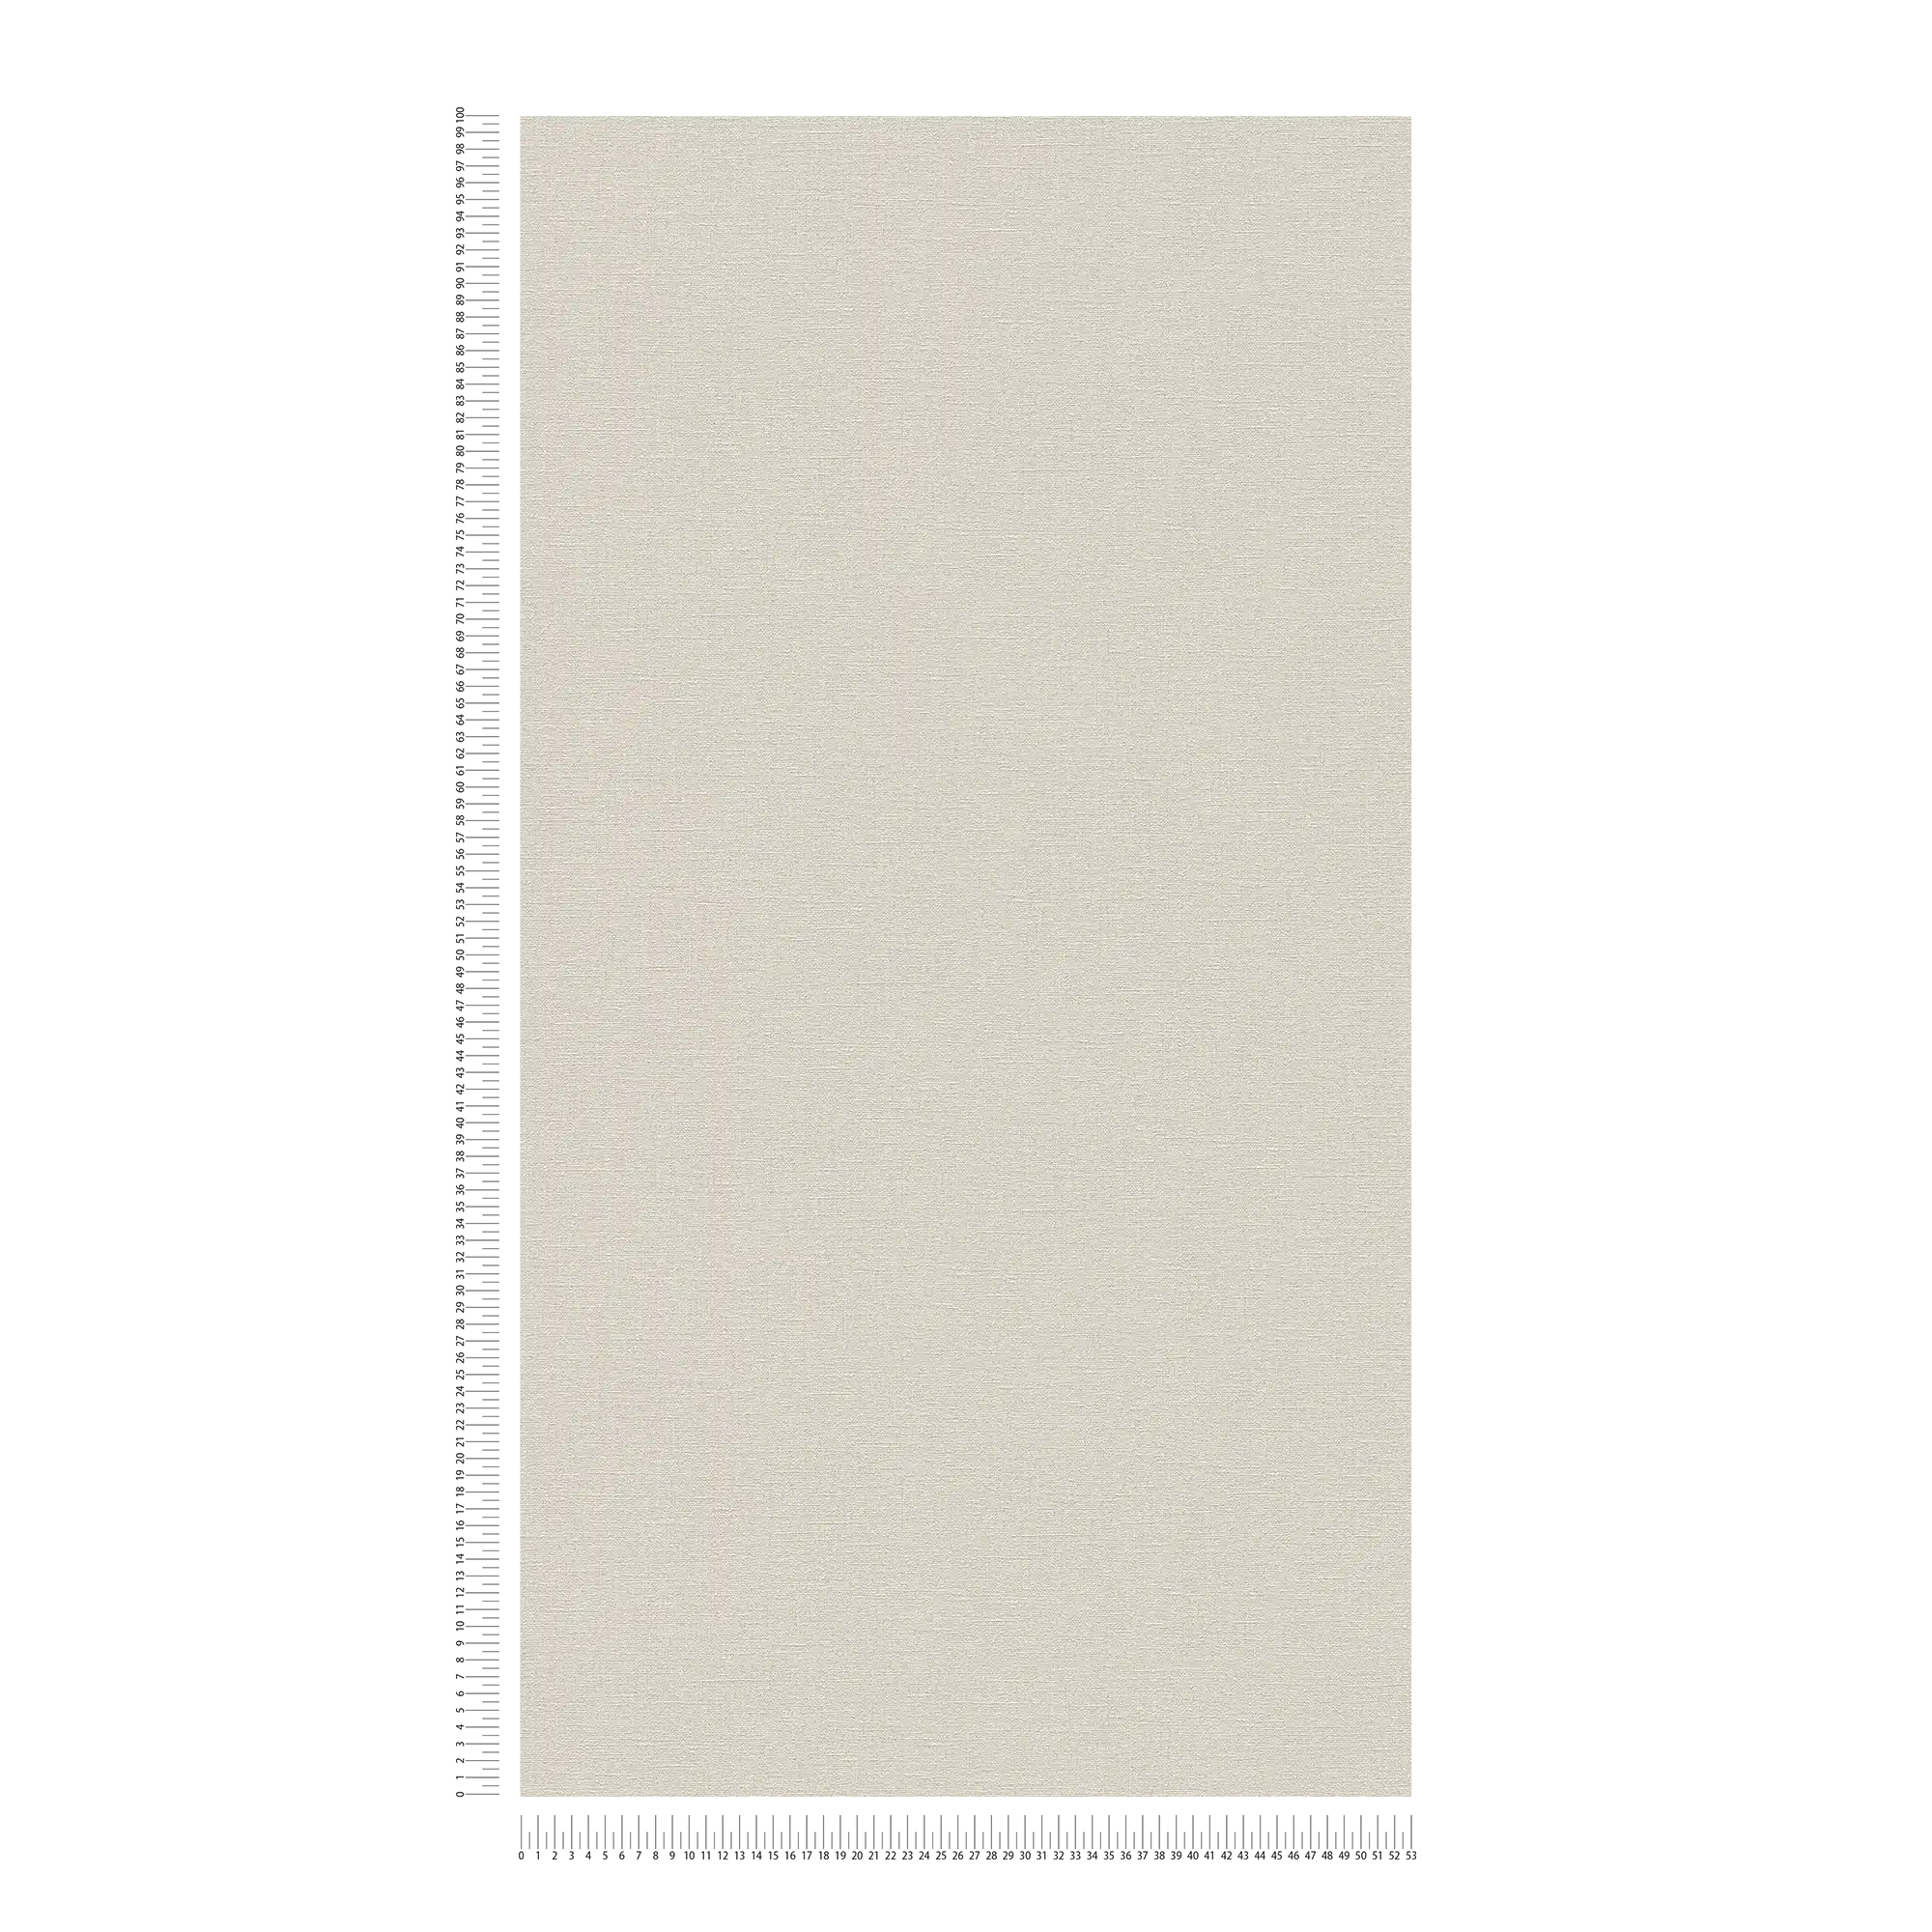             Cream beige wallpaper plain & matte with textured pattern
        